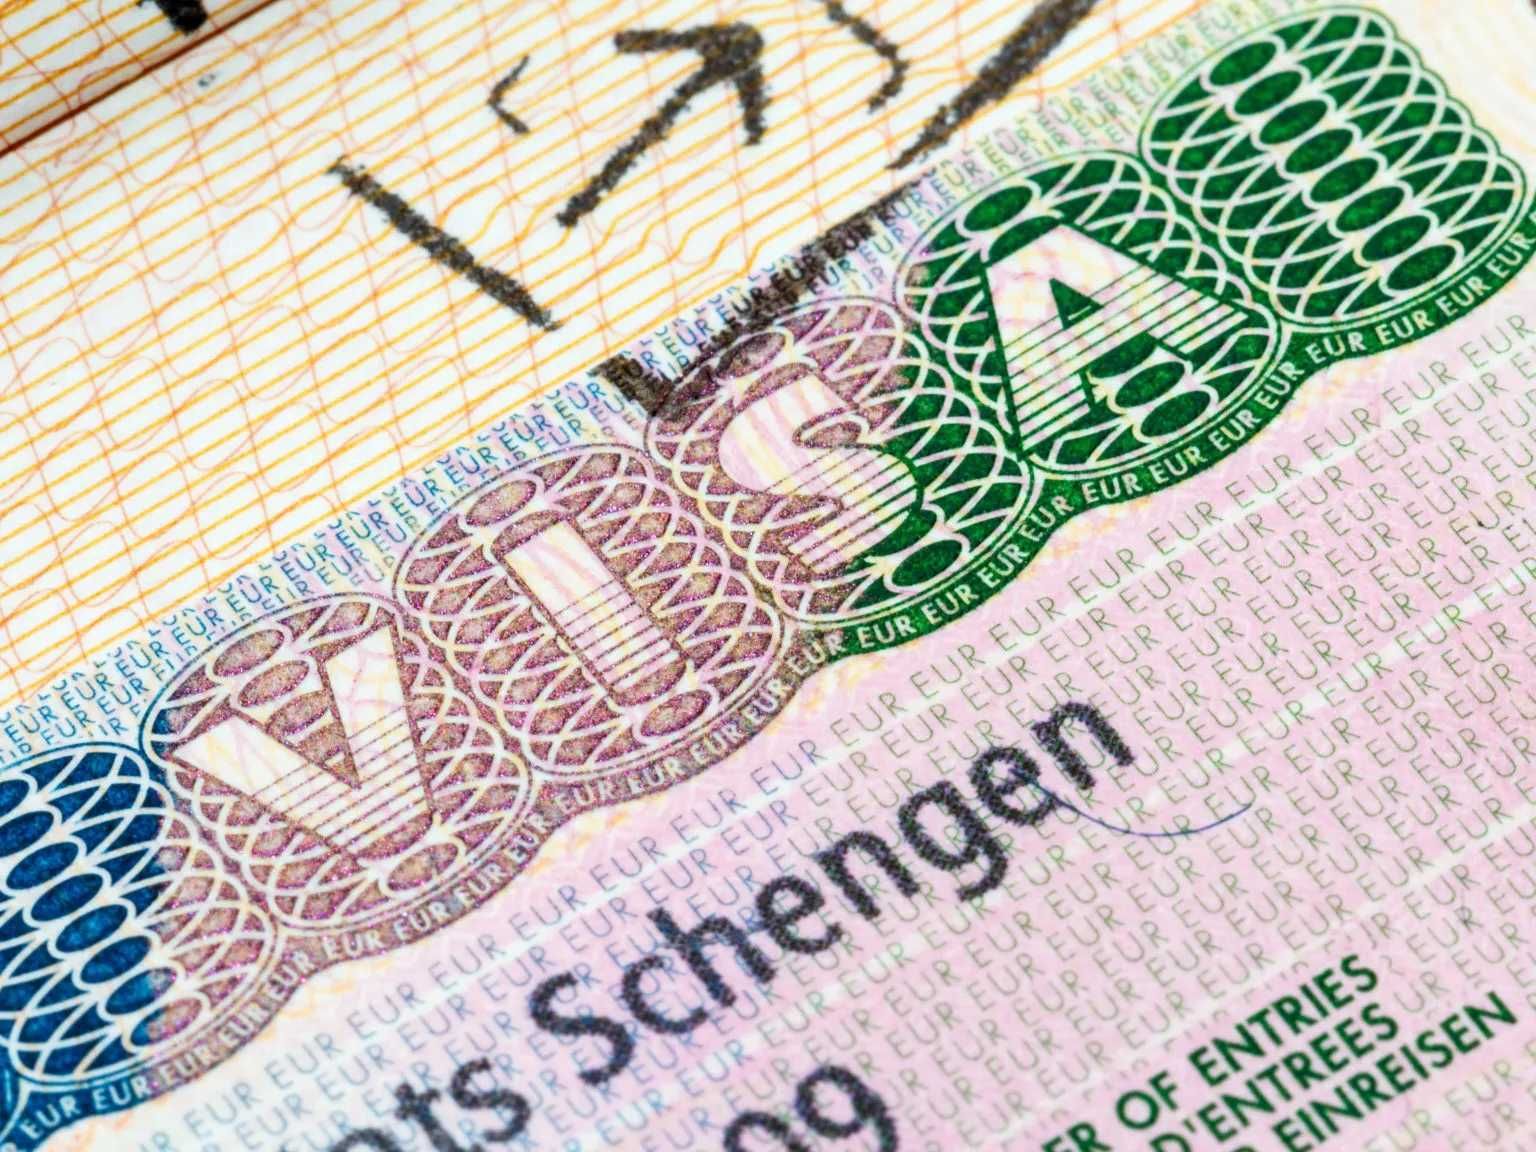 Визовые услуги в Шенген страны